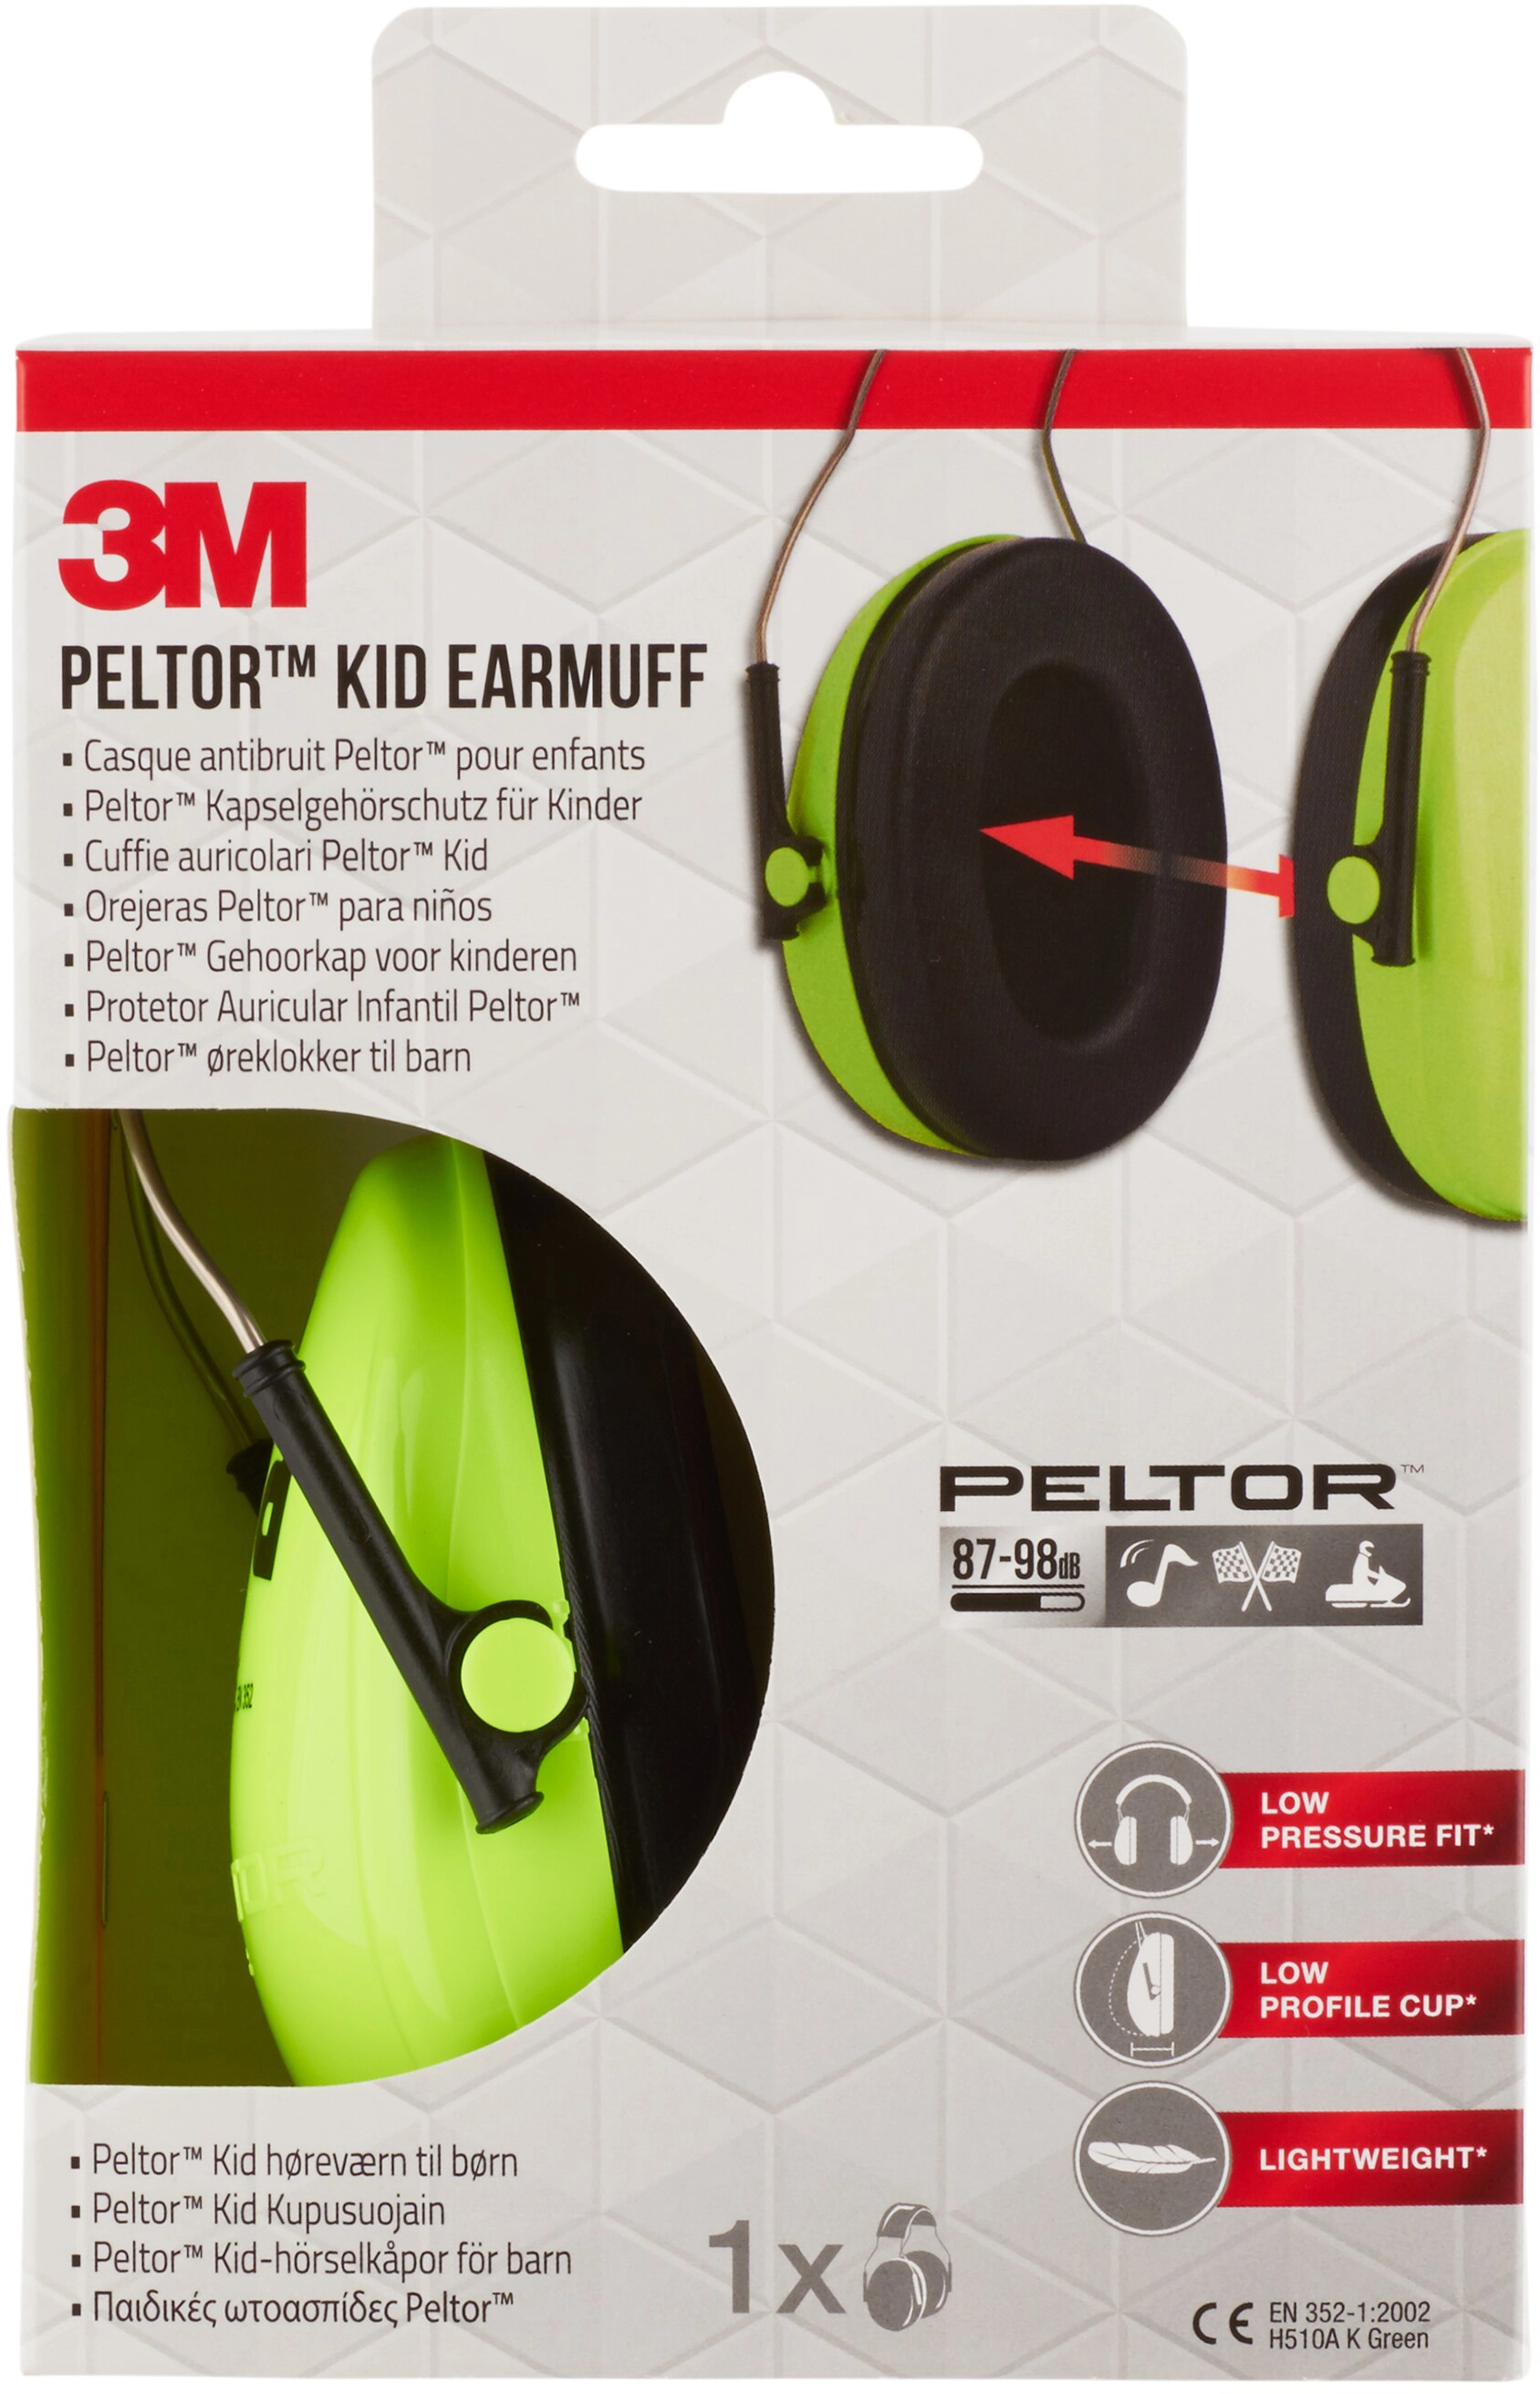 3M Gehörschutz Peltor Optime H510A komfort